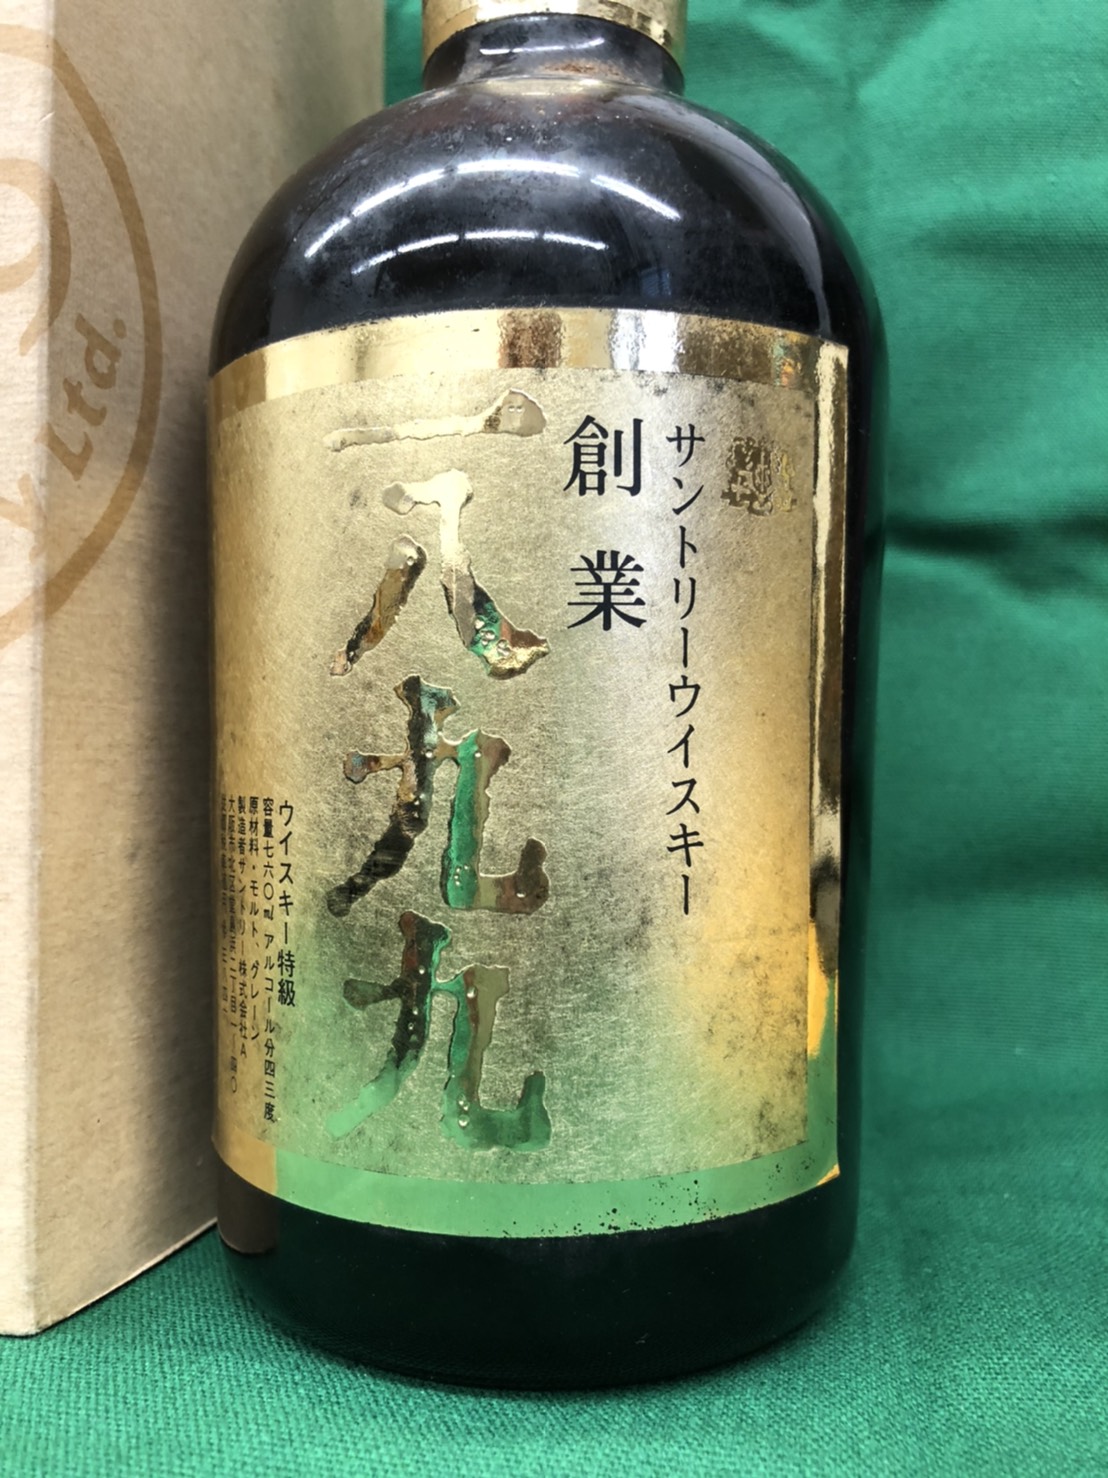 日本一 サントリー 創業一八九九 ウイスキー特級 ウイスキー